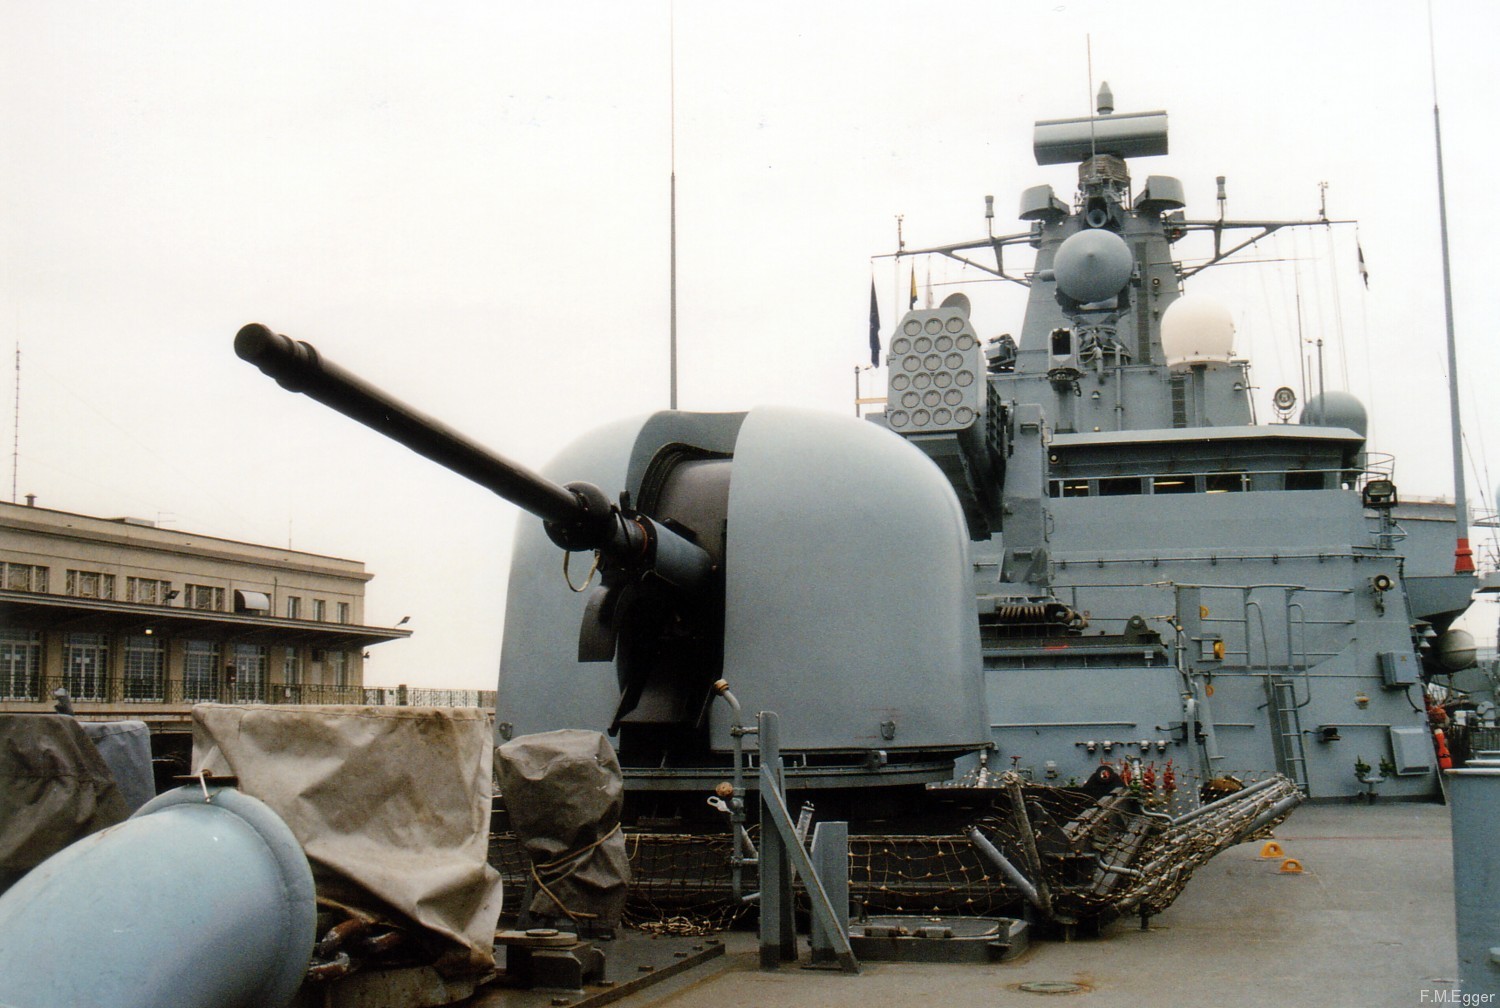 f-216 fgs schleswig holstein type 123 class frigate german navy nato stanavformed snfm trieste italy 2003 29 oto melara 76/62 gun